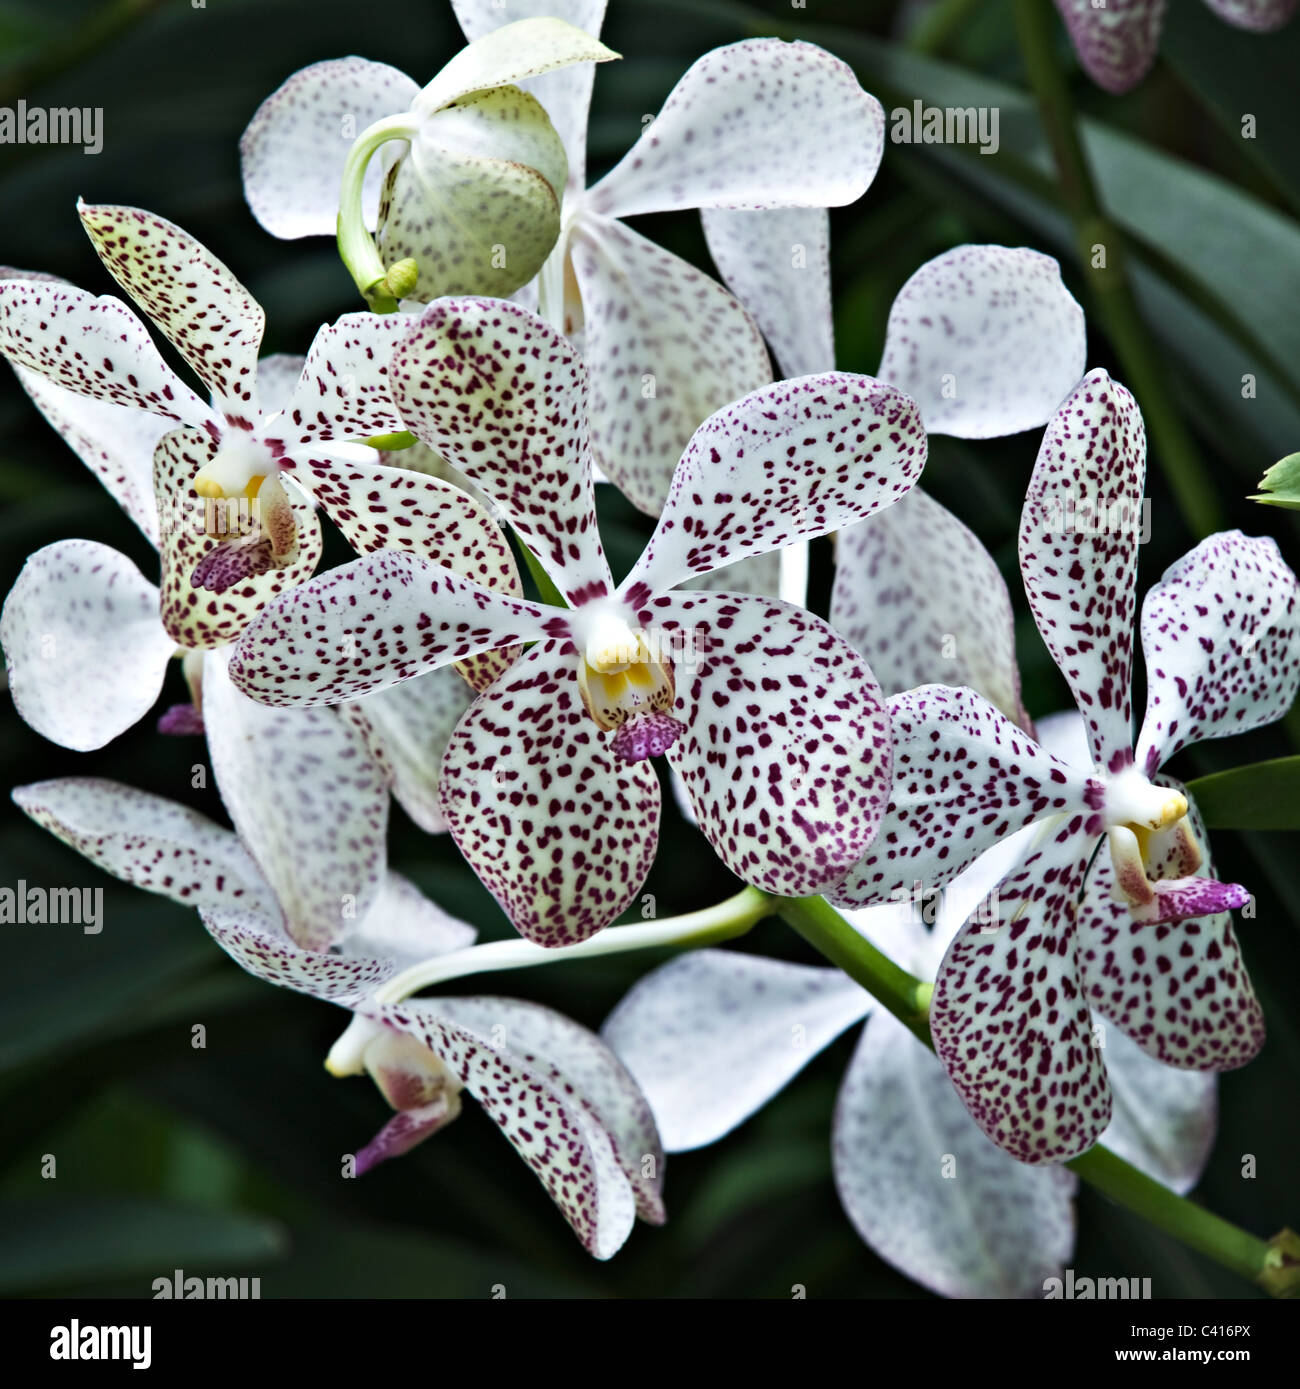 Cattleya hybride Orchidee blüht in der National Orchid Garden Singapur Republik Singapur Asien Stockfoto